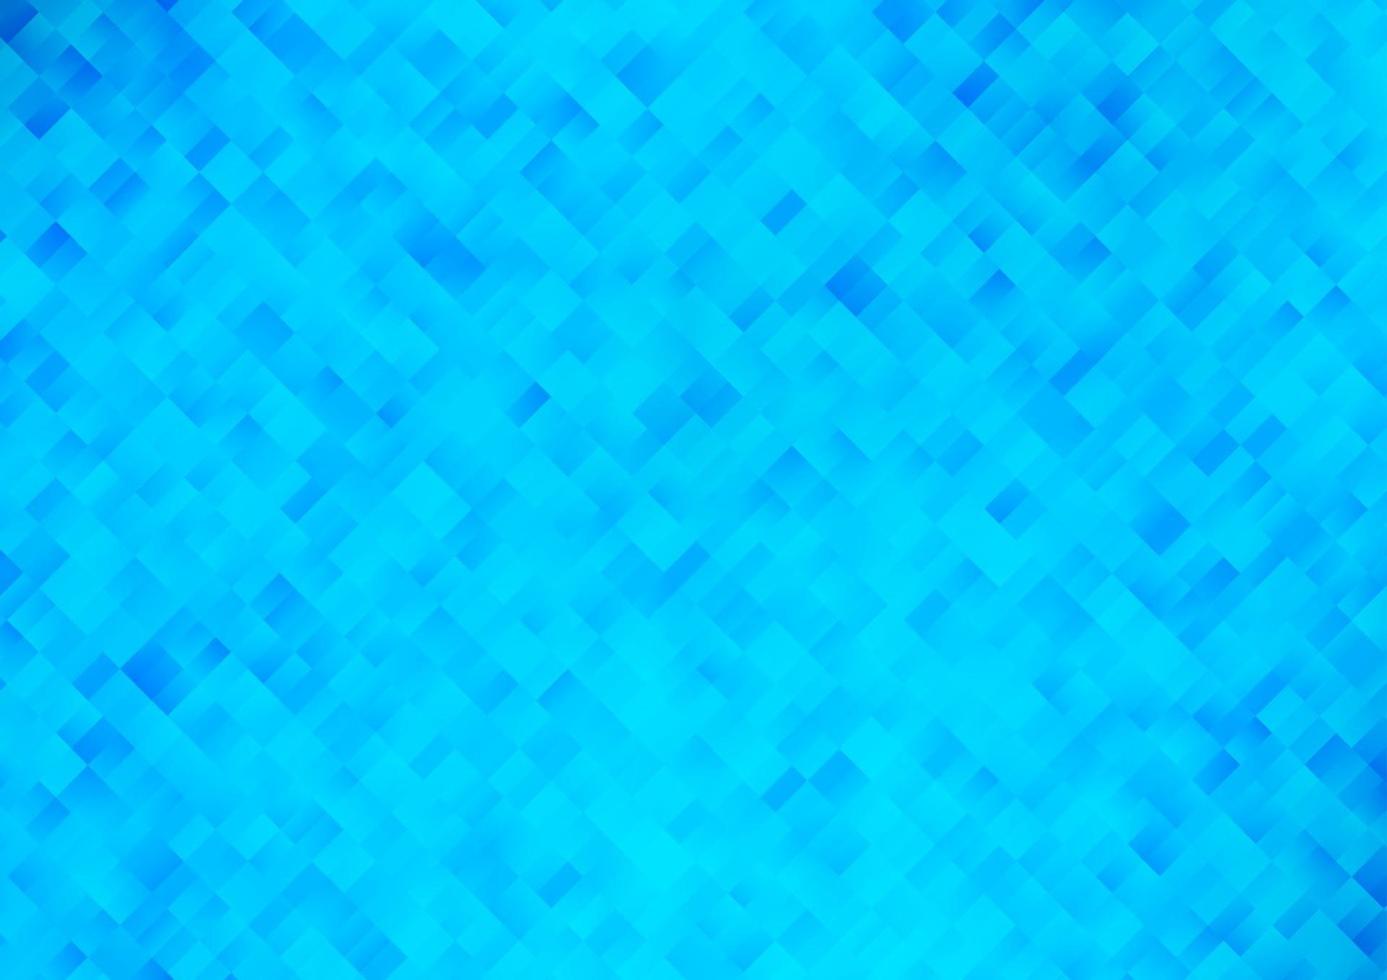 fondo de vector azul claro con rectángulos, cuadrados.